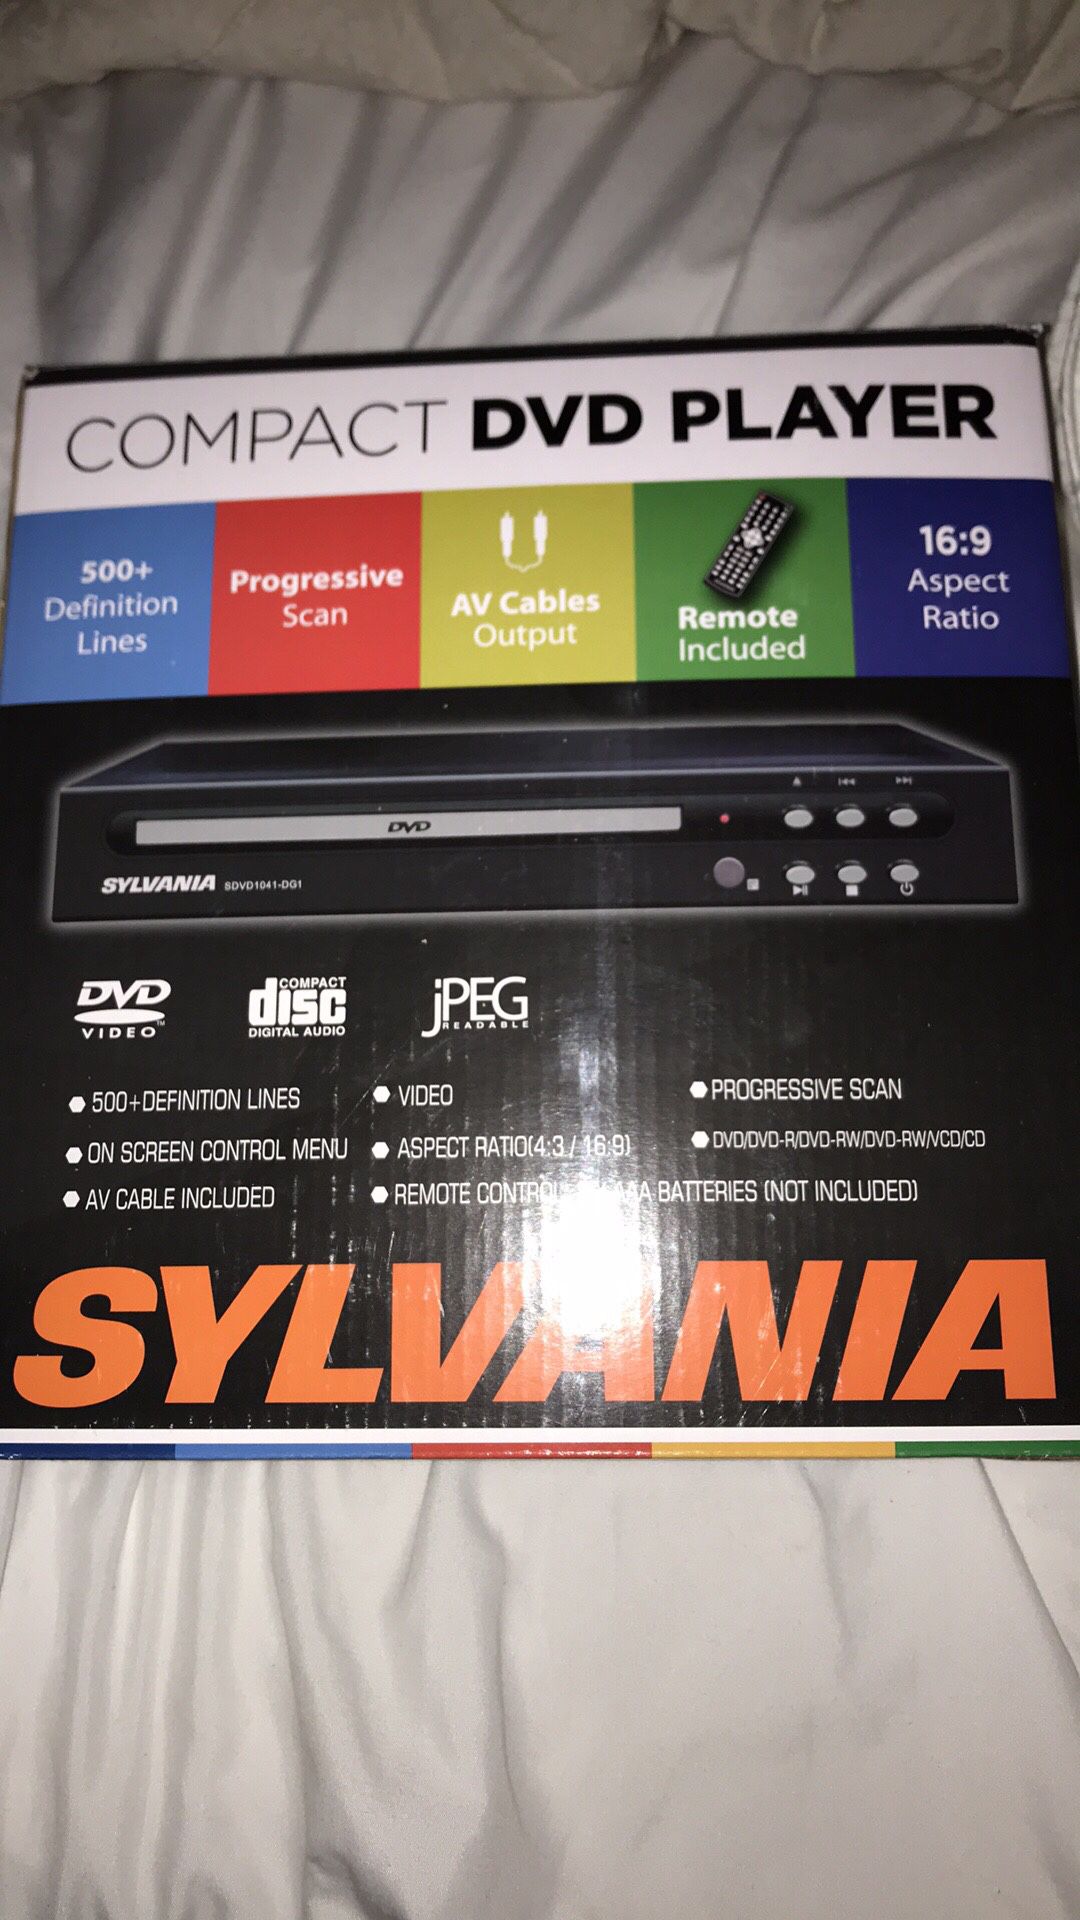 Brand new DVD player